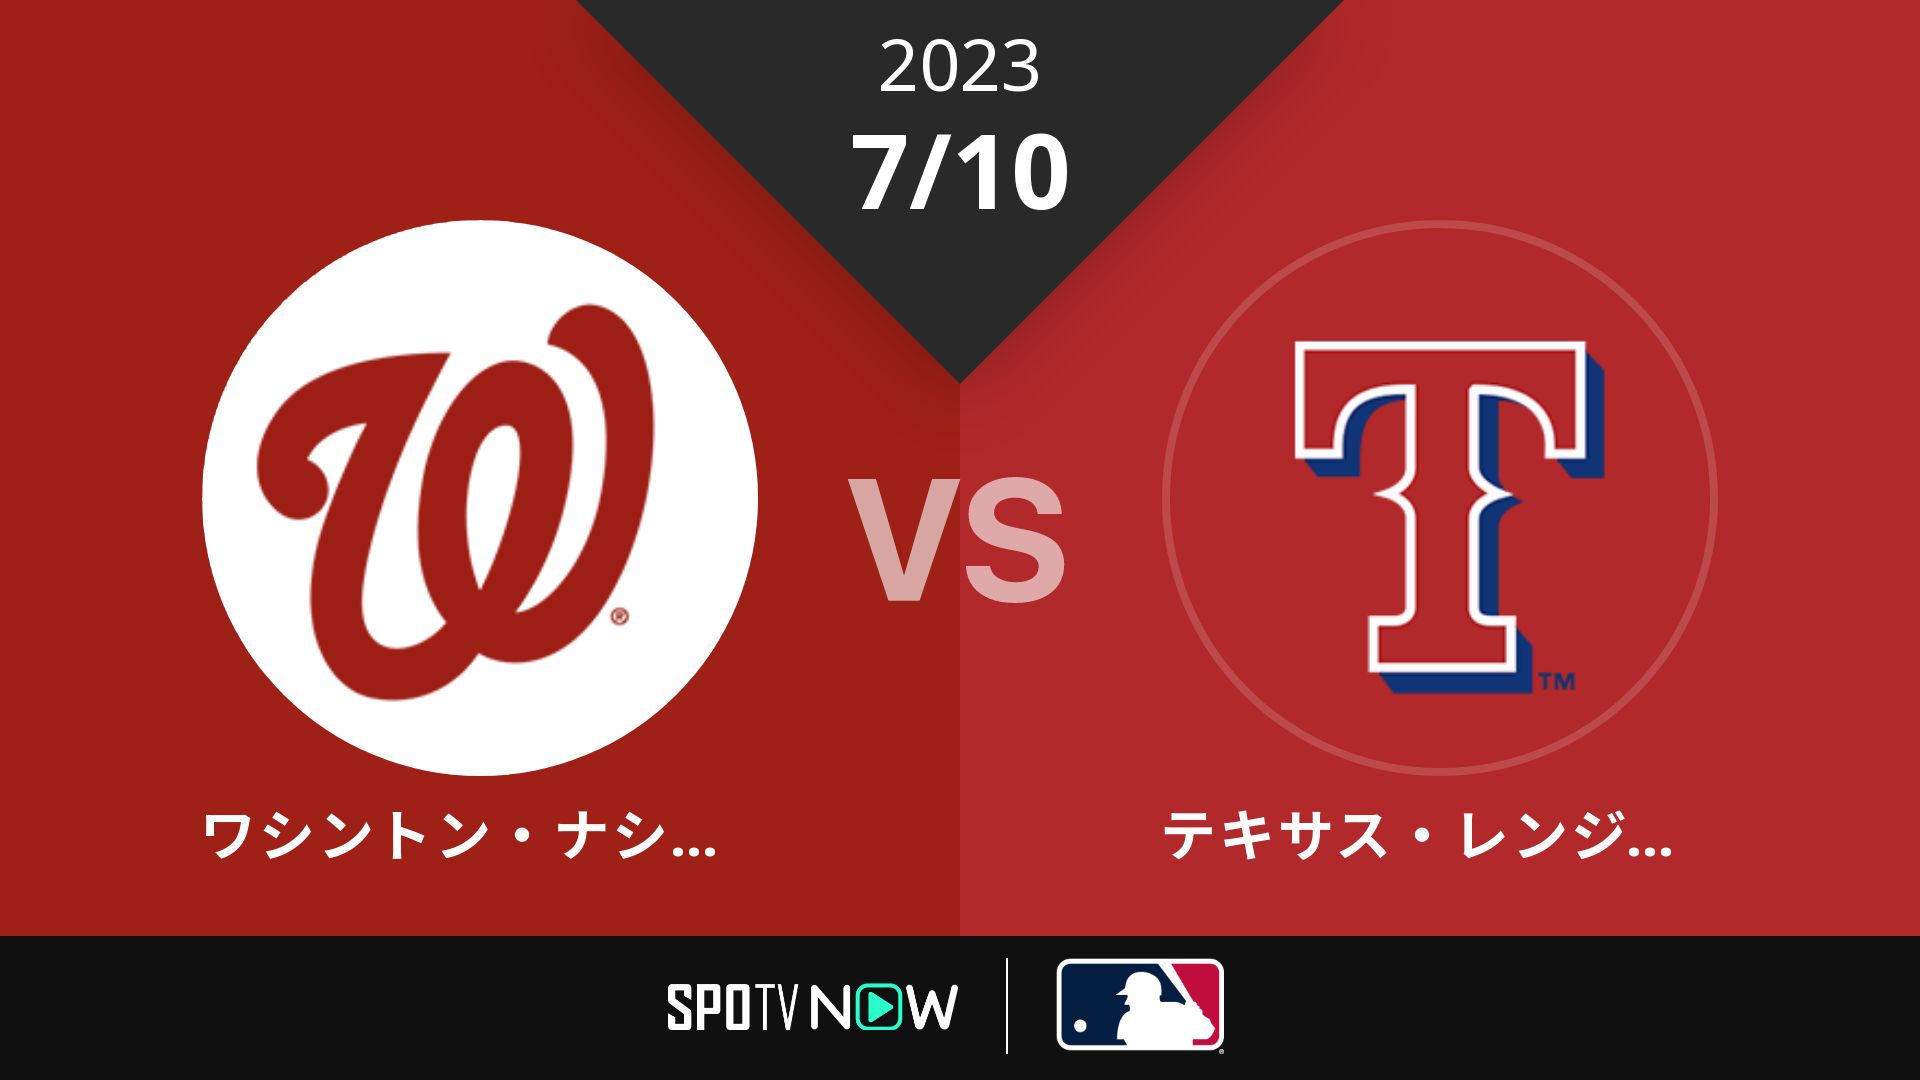 2023/7/10 ナショナルズ vs レンジャーズ [MLB]